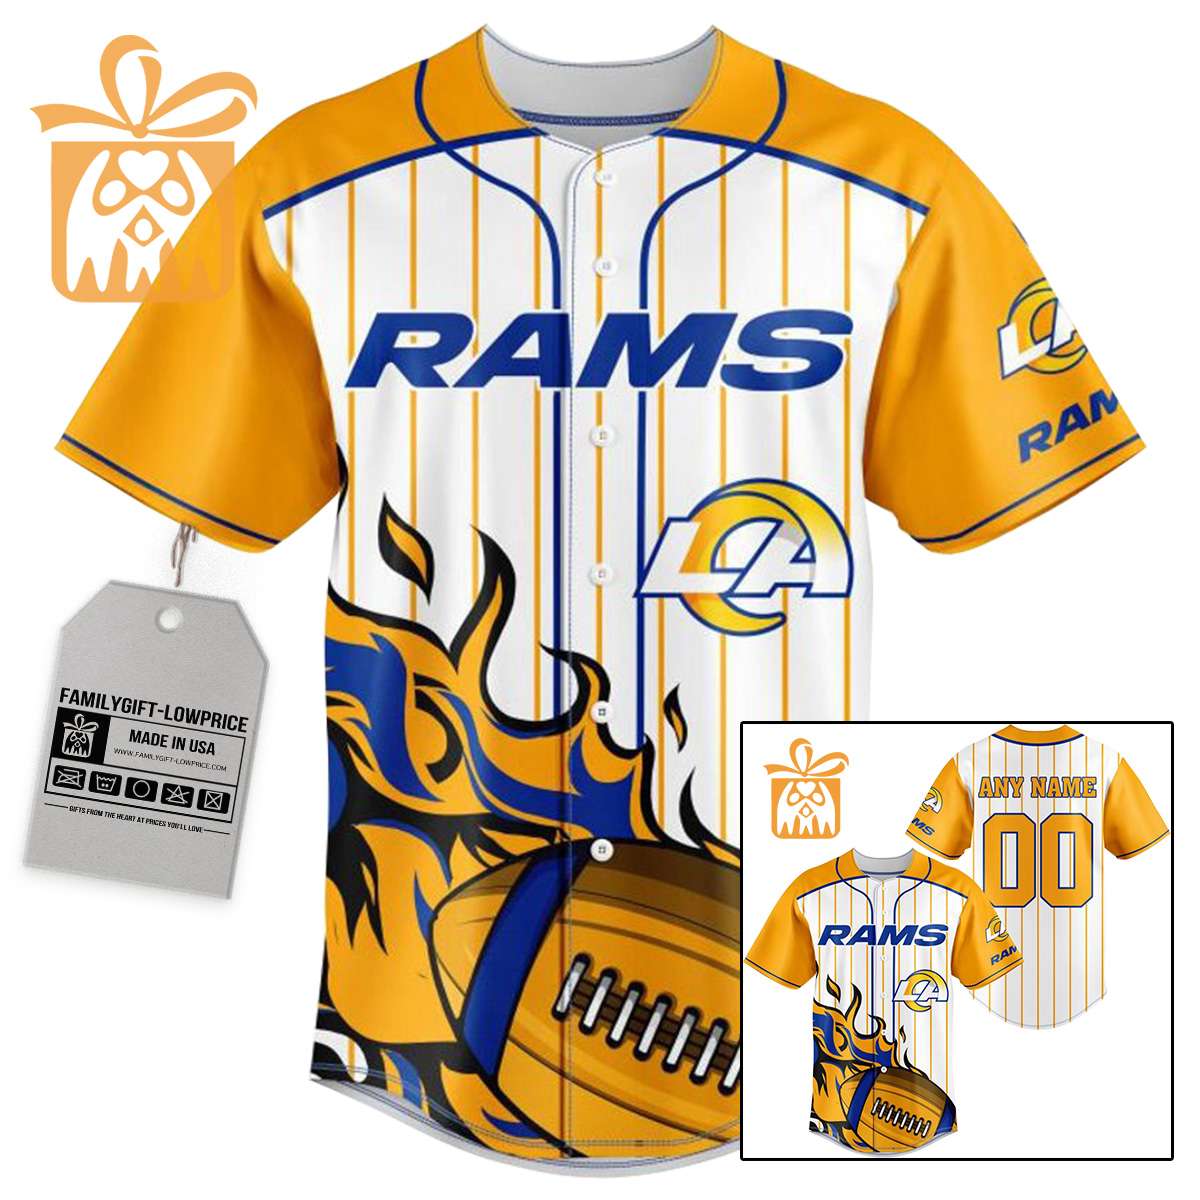 NFL Baseball Jersey - Rams Baseball Jersey TShirt - Personalized Baseball Jerseys